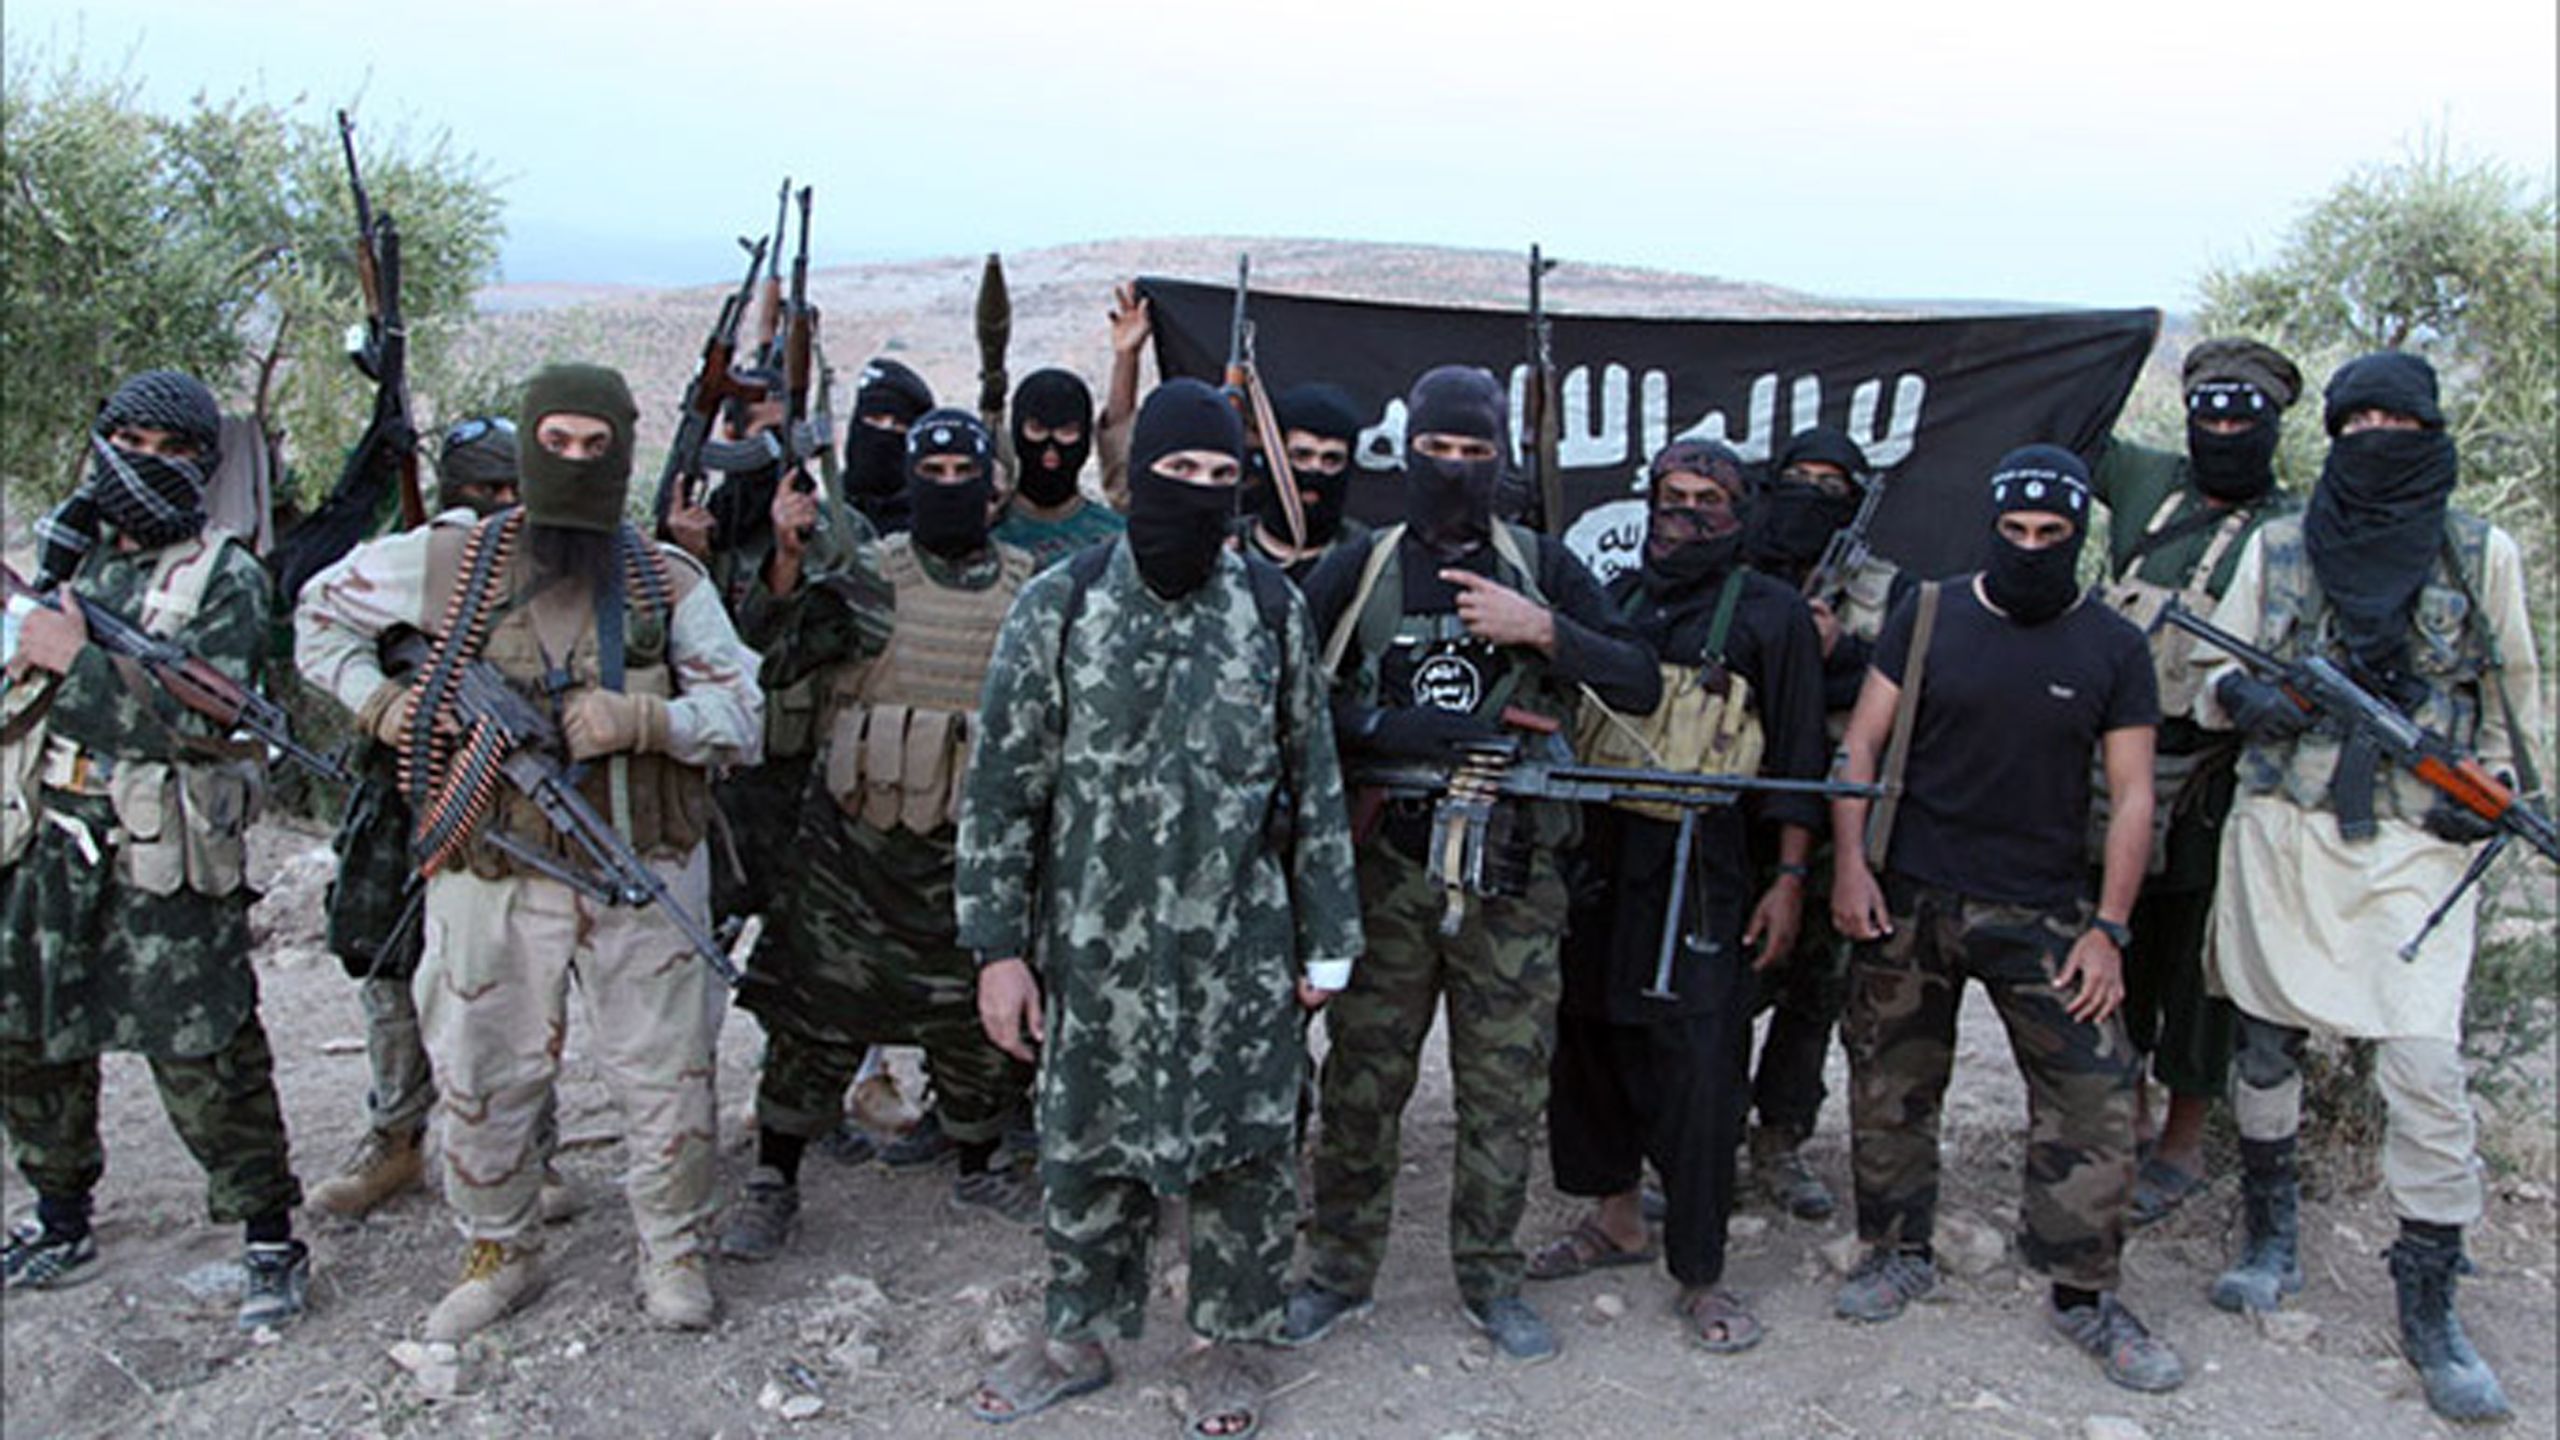 Национальность террористов в сити. Муджахиды Исламского государства. Одежда террористов.